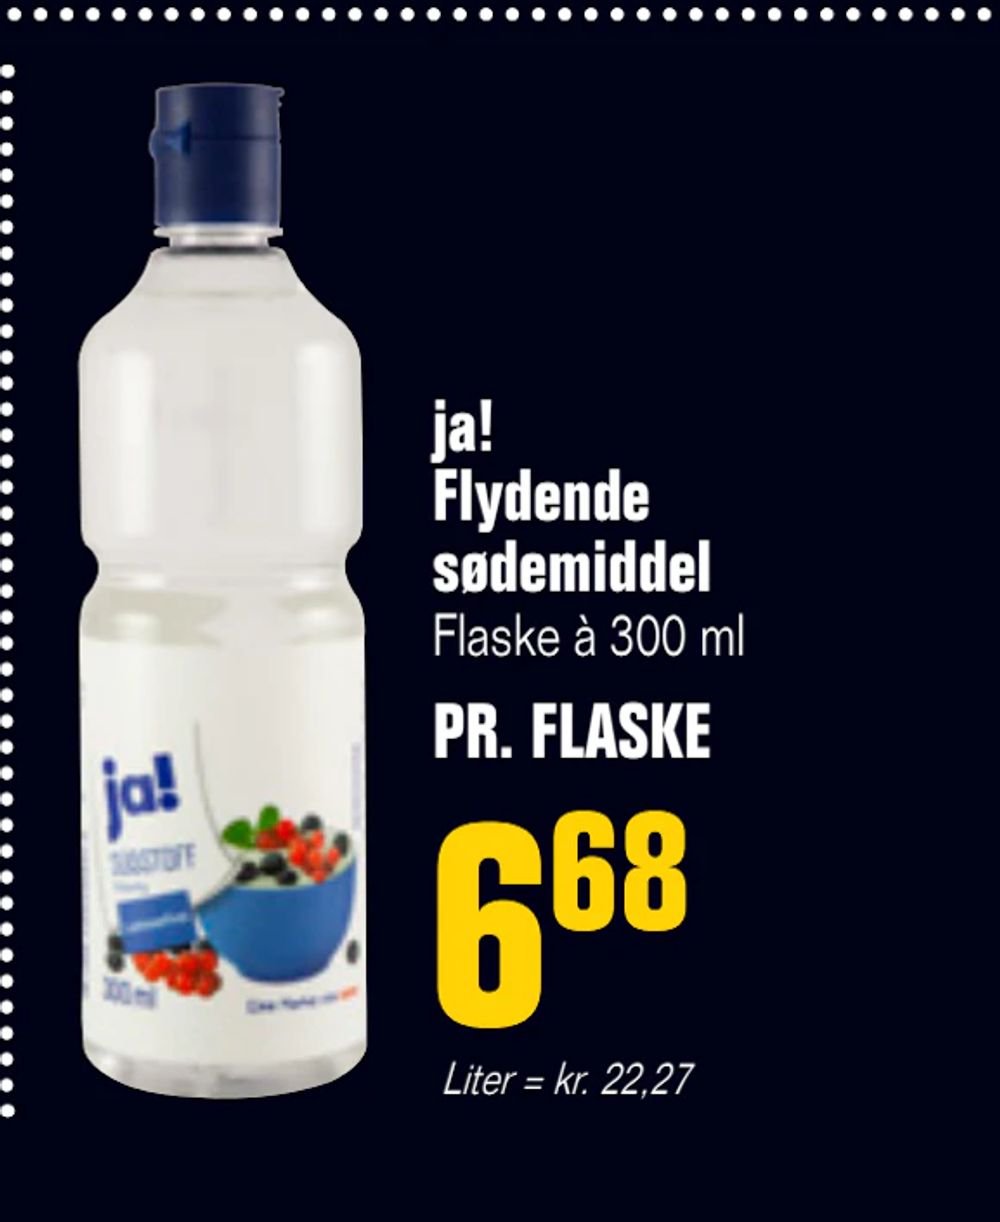 Tilbud på ja! Flydende sødemiddel fra Poetzsch Padborg til 6,68 kr.